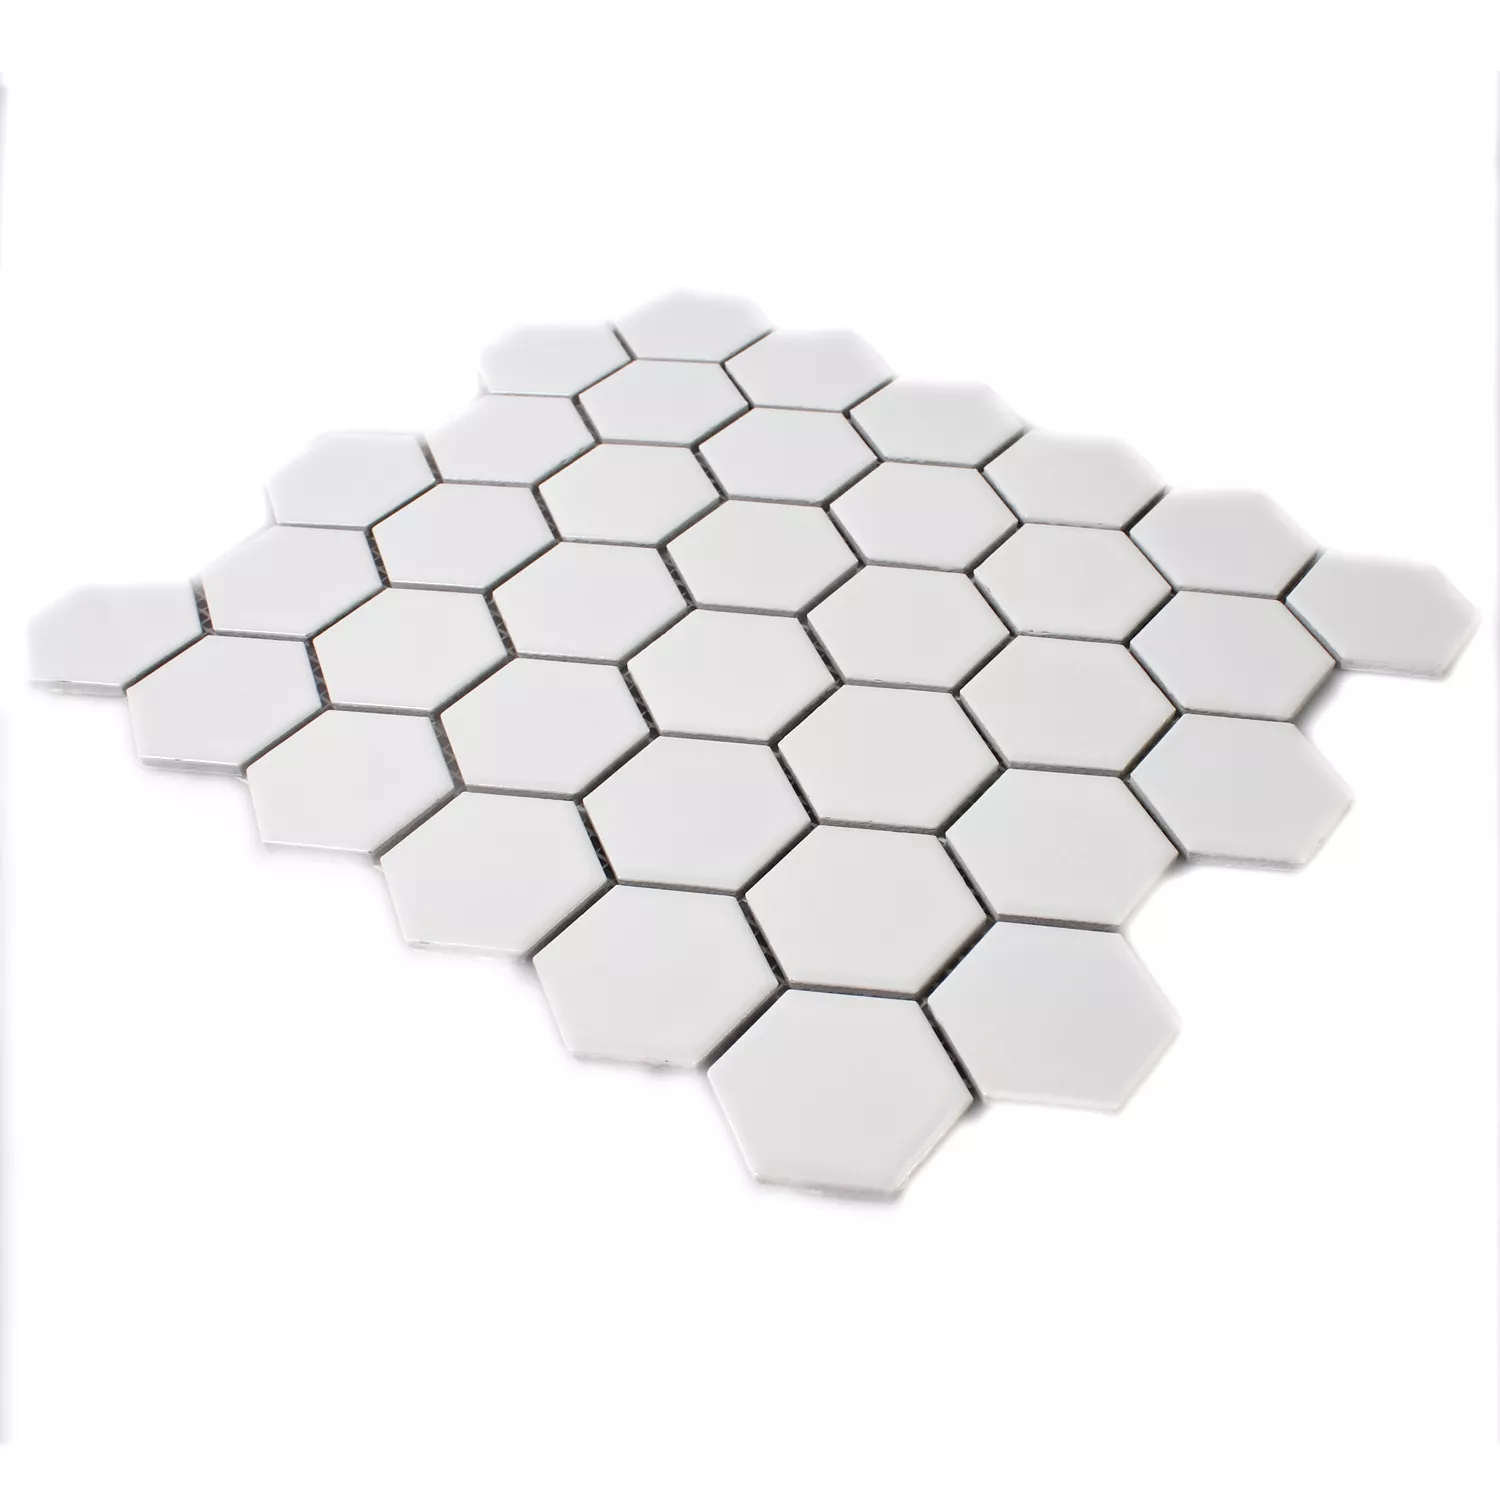 Mosaik Keramik Hexagon Vit Matt